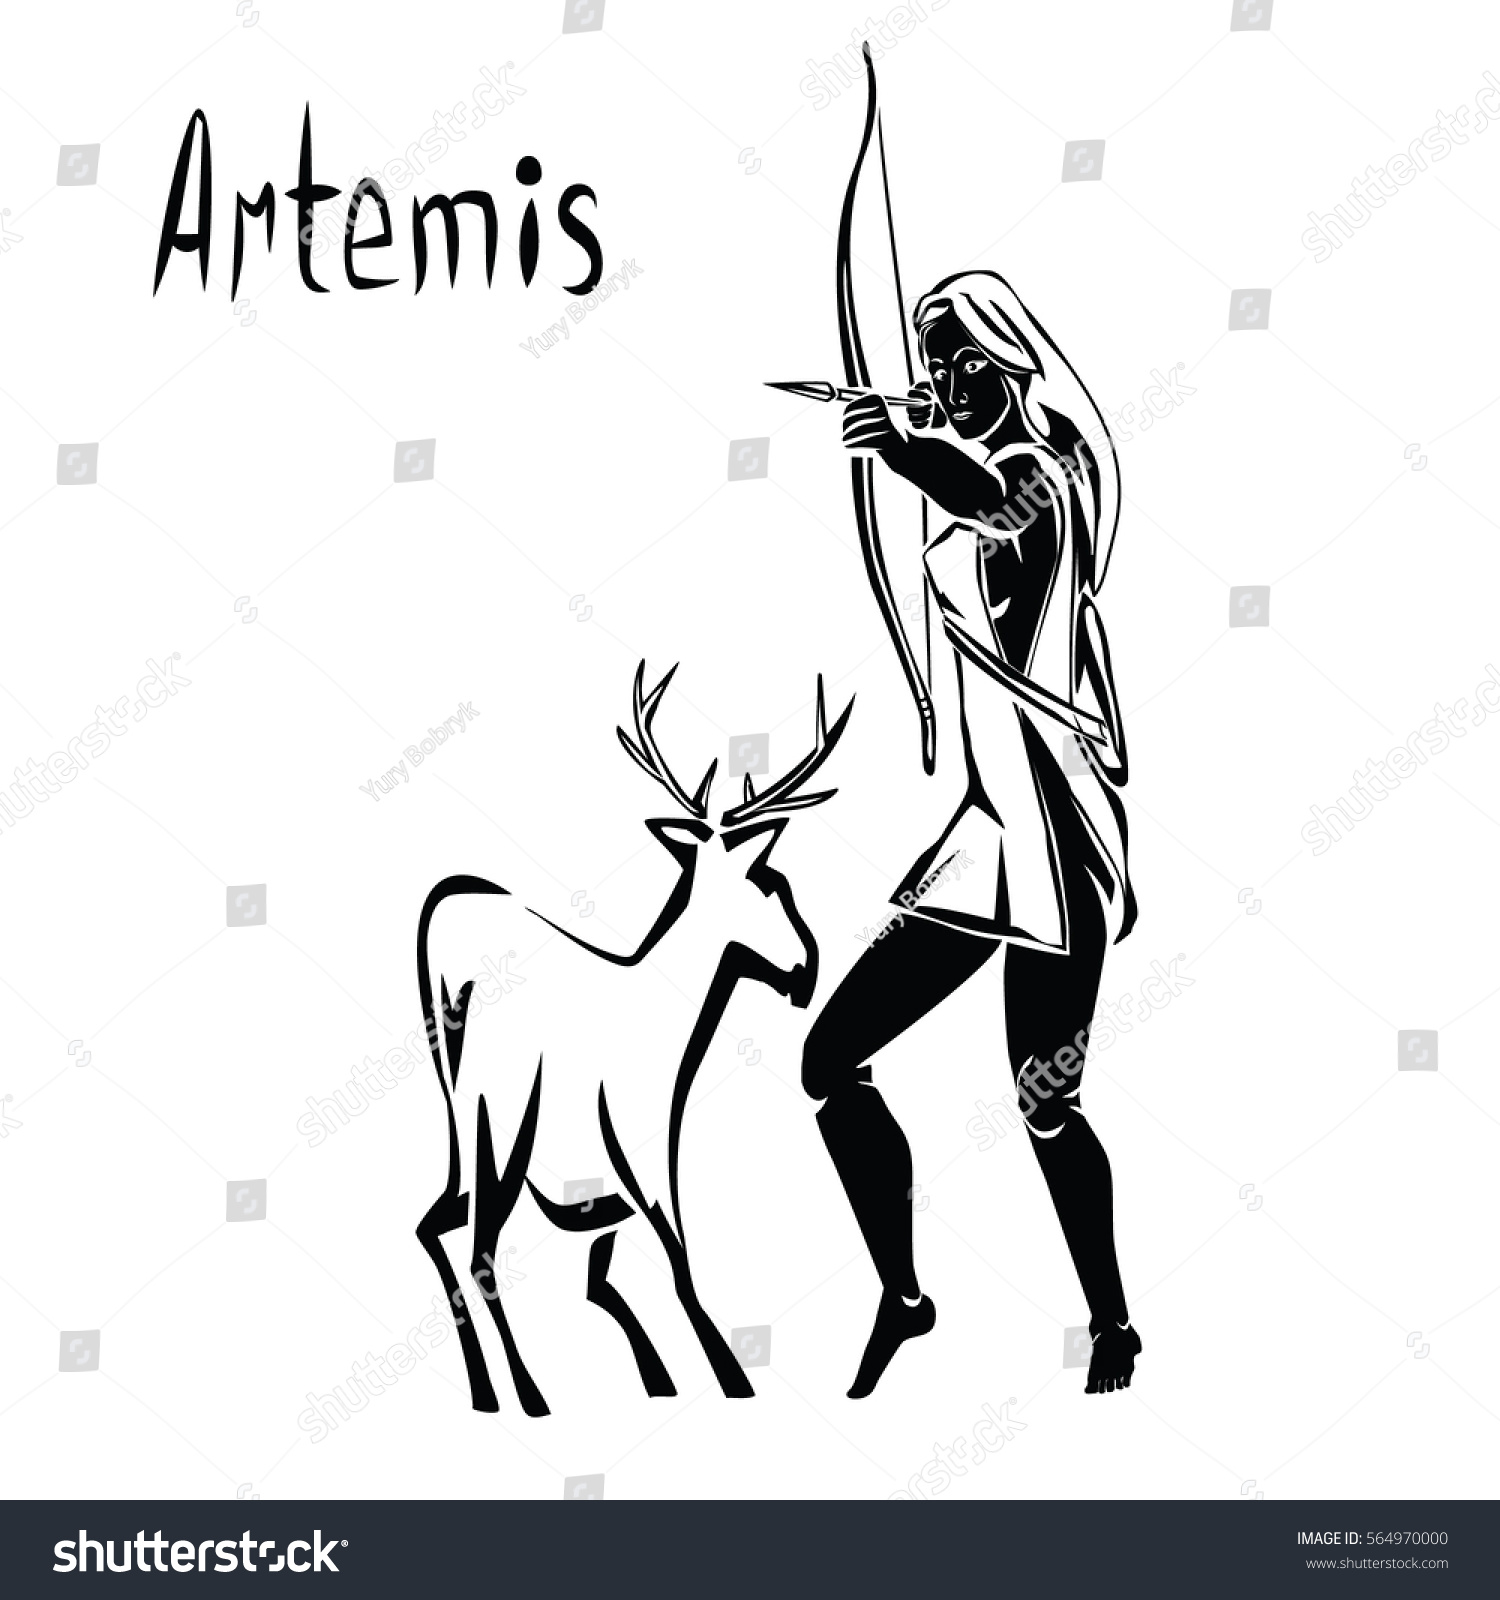 Artemis черно-белый